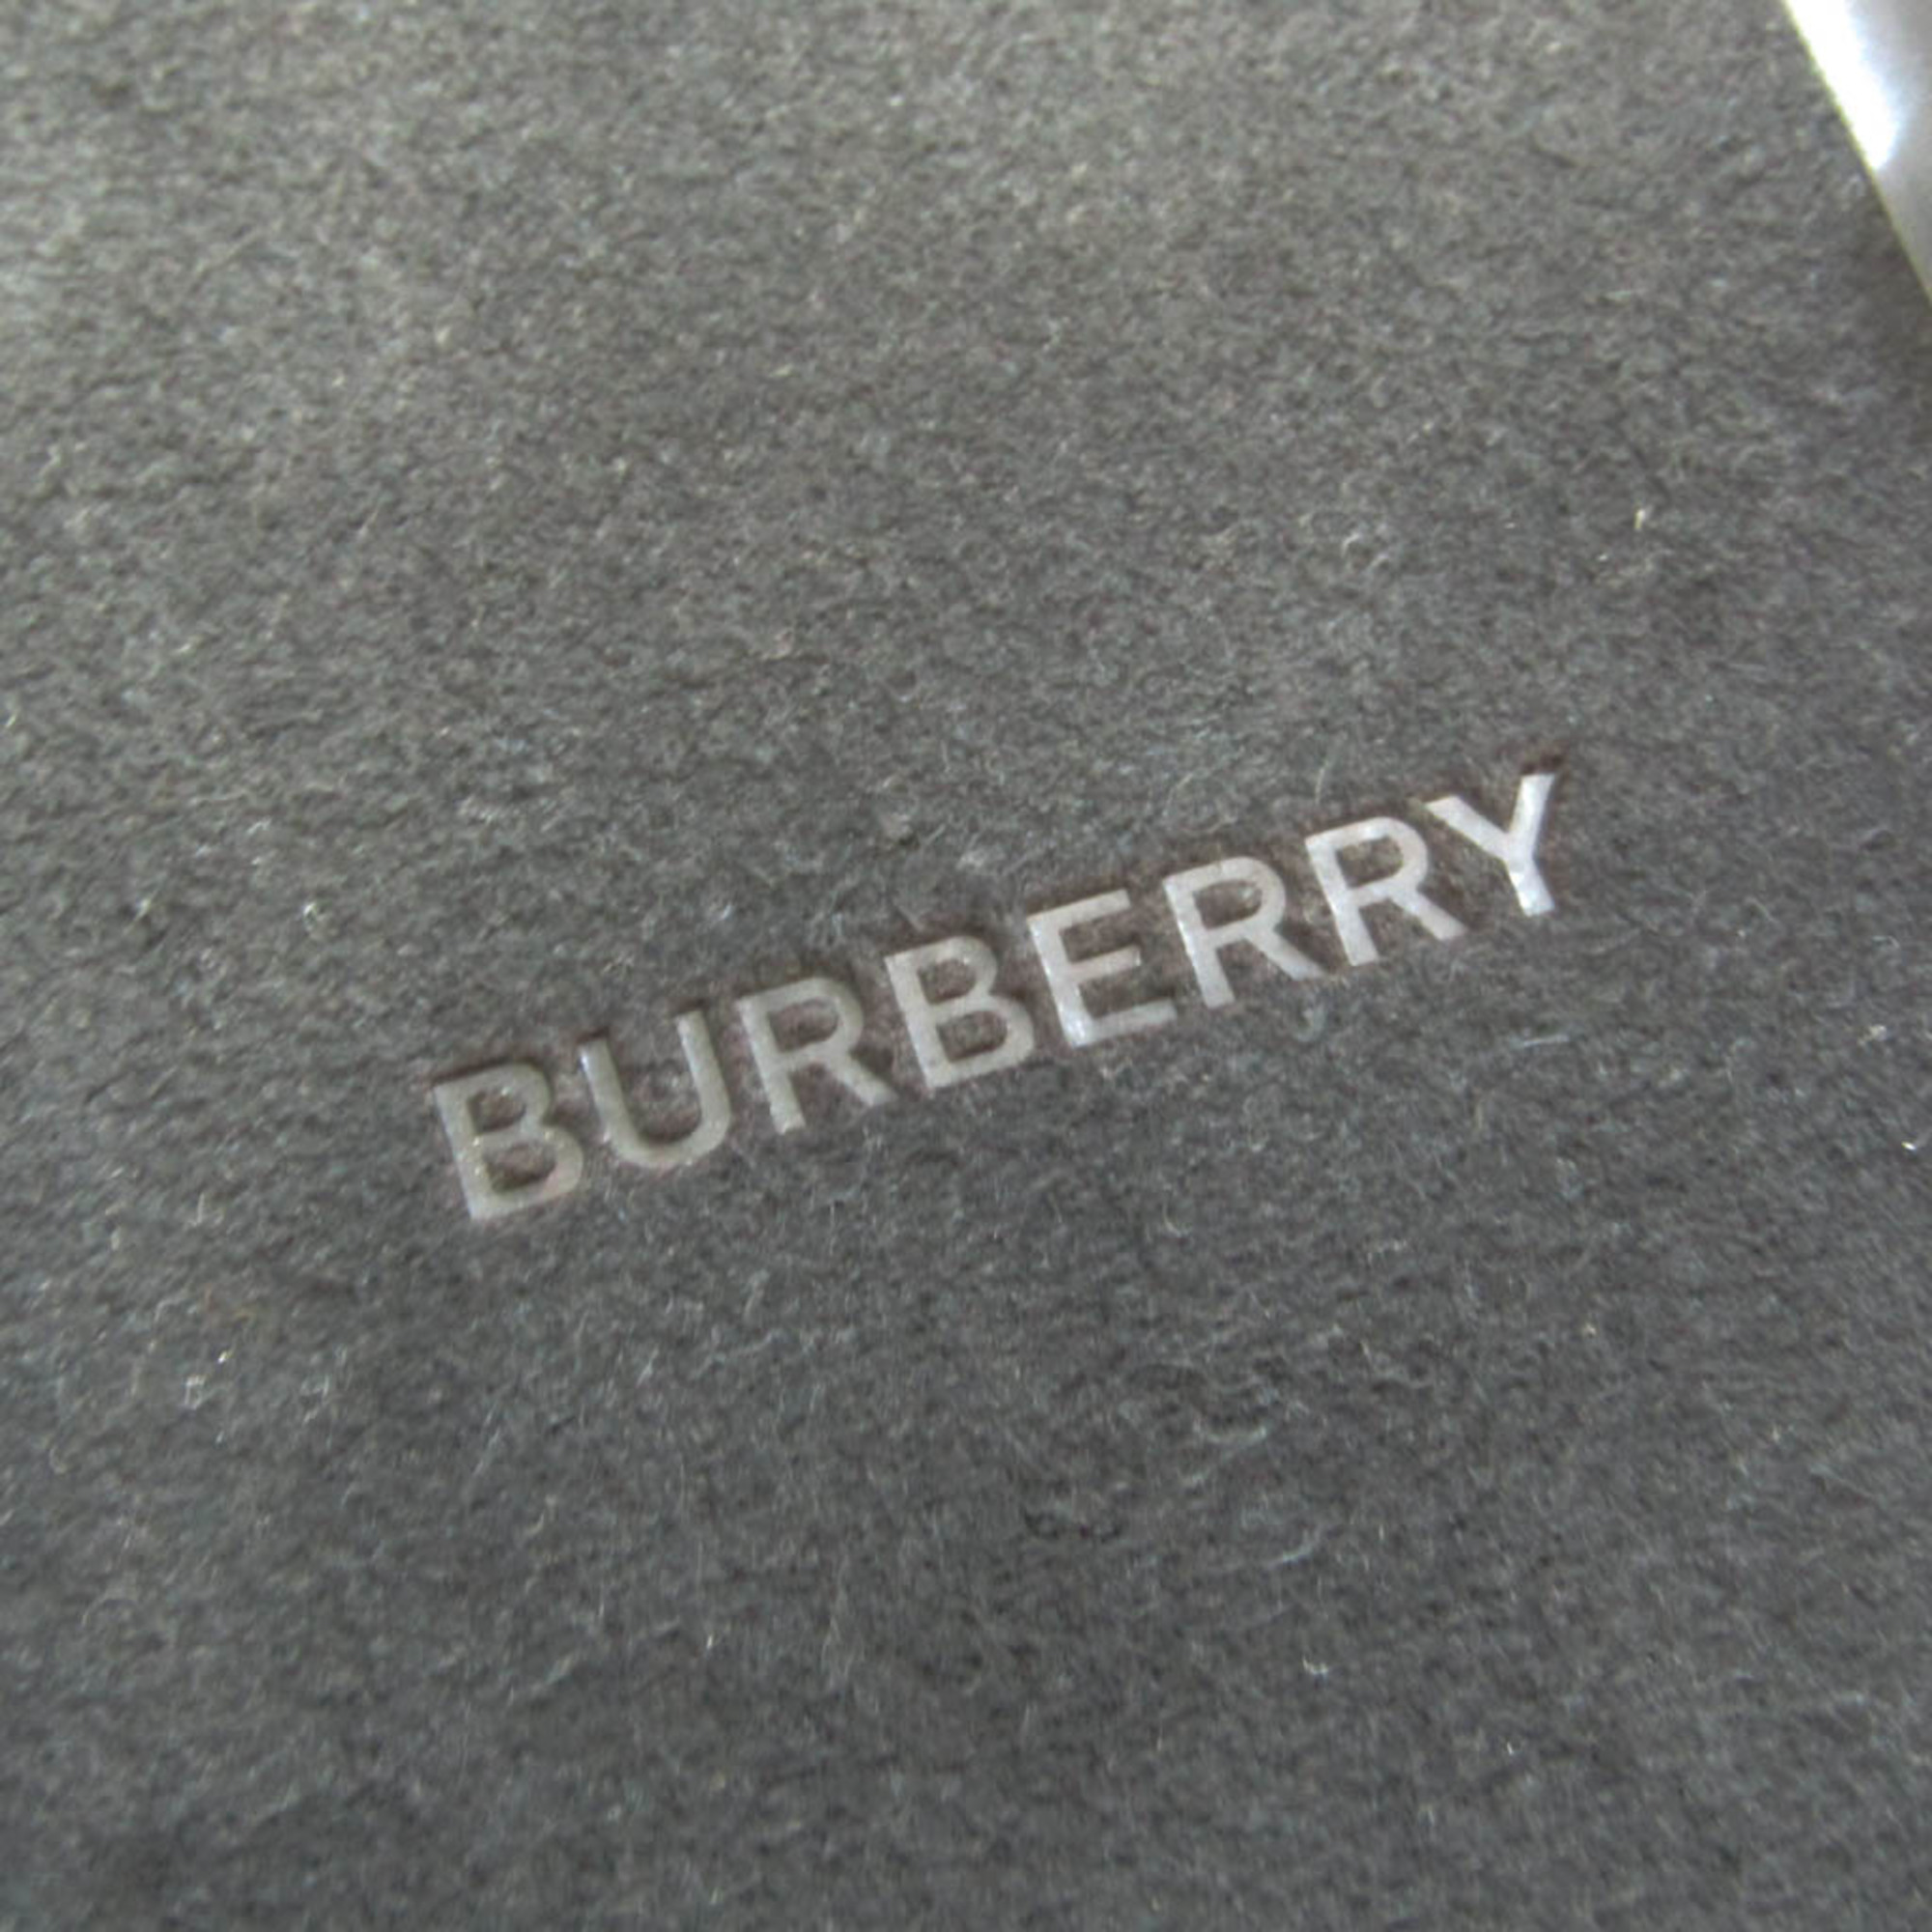 バーバリー(Burberry) ナイトロゴ 8020802 レザー バンパー iPhone X 対応 ブラック